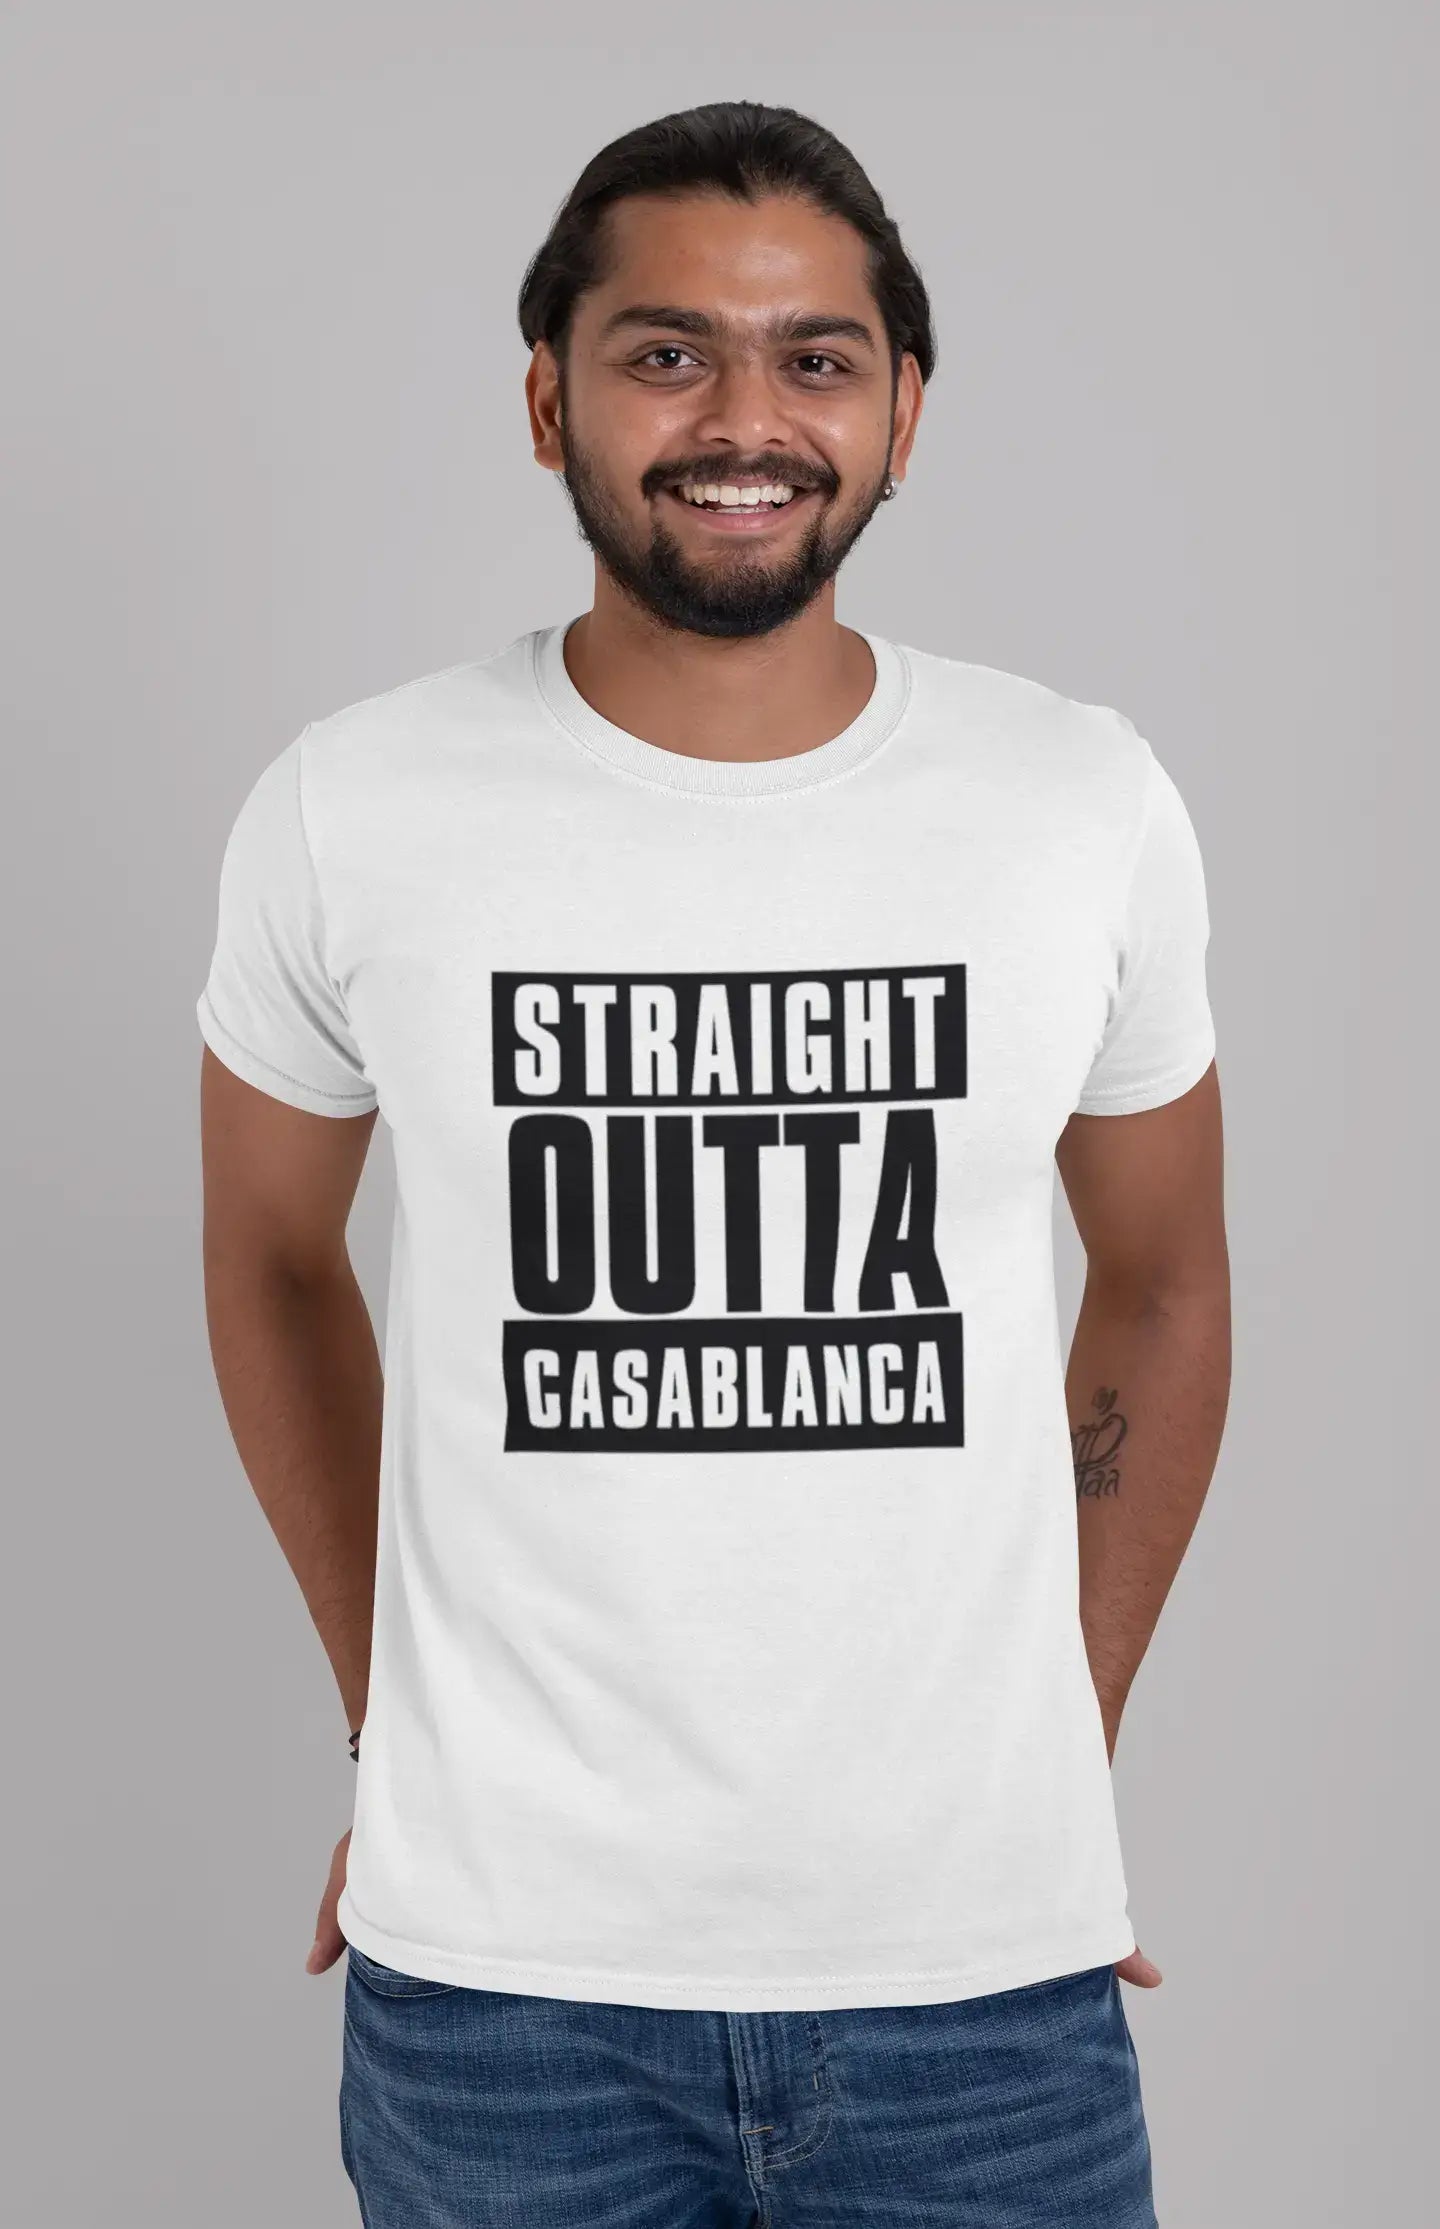 Straight Outta Casablanca, Men's Short Sleeve Round Neck T-shirt 00027